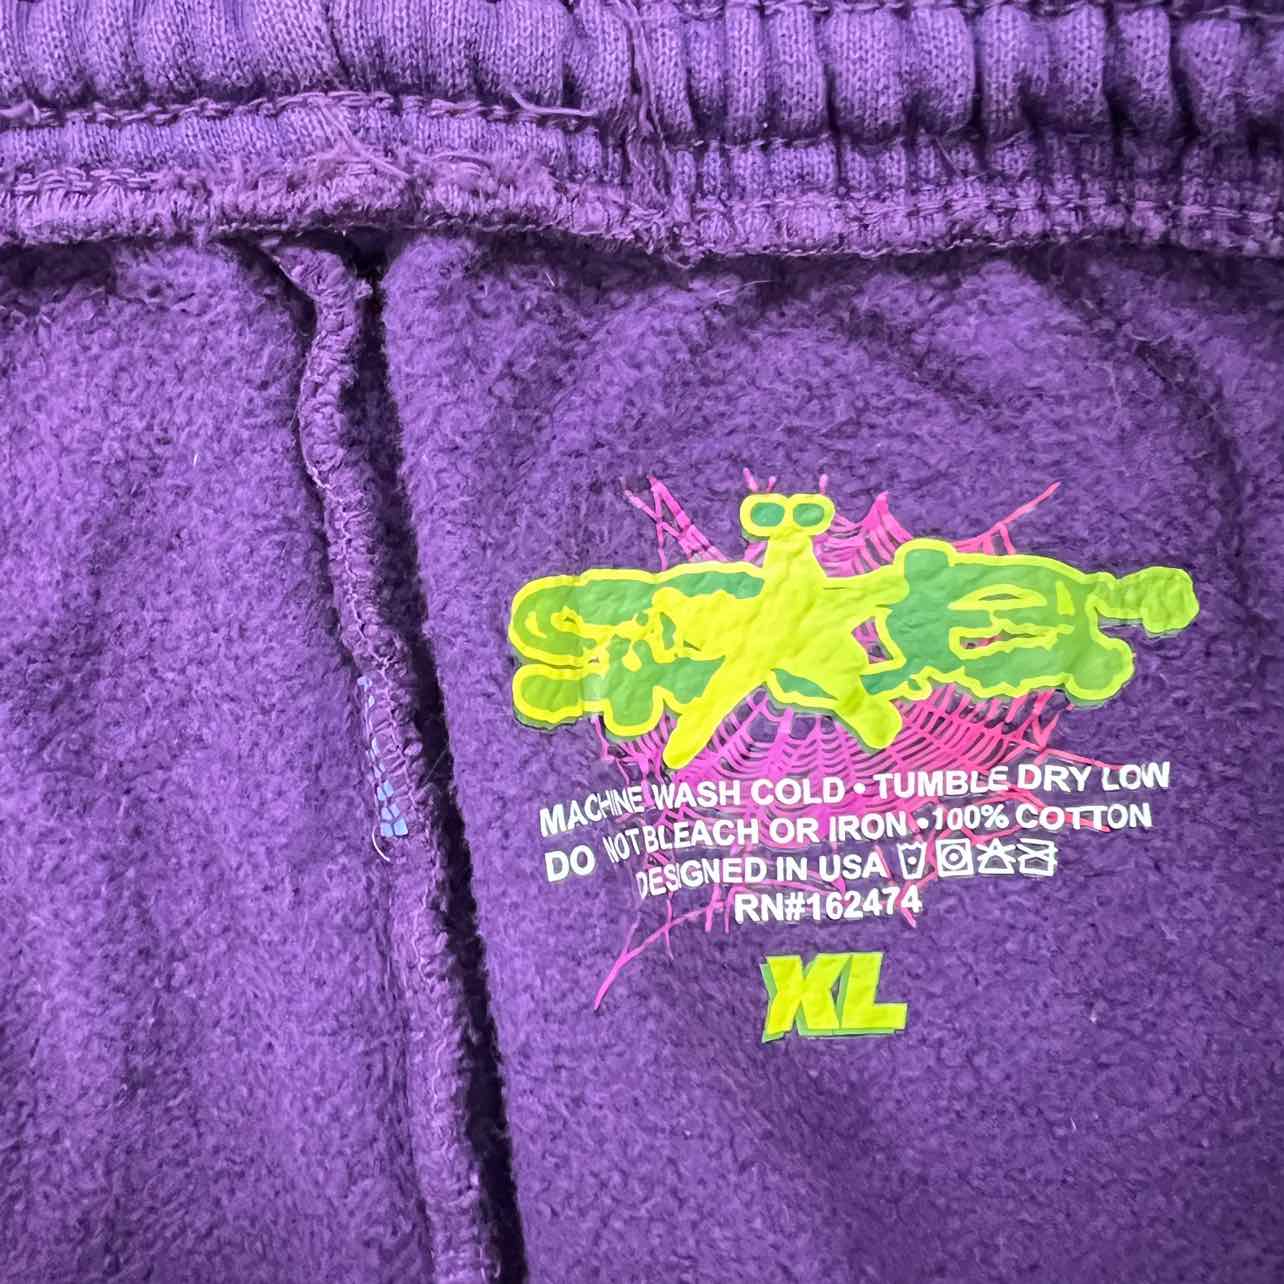 Sp5der Sweatpants &quot;CLASSIC&quot; Purple Used Size XL